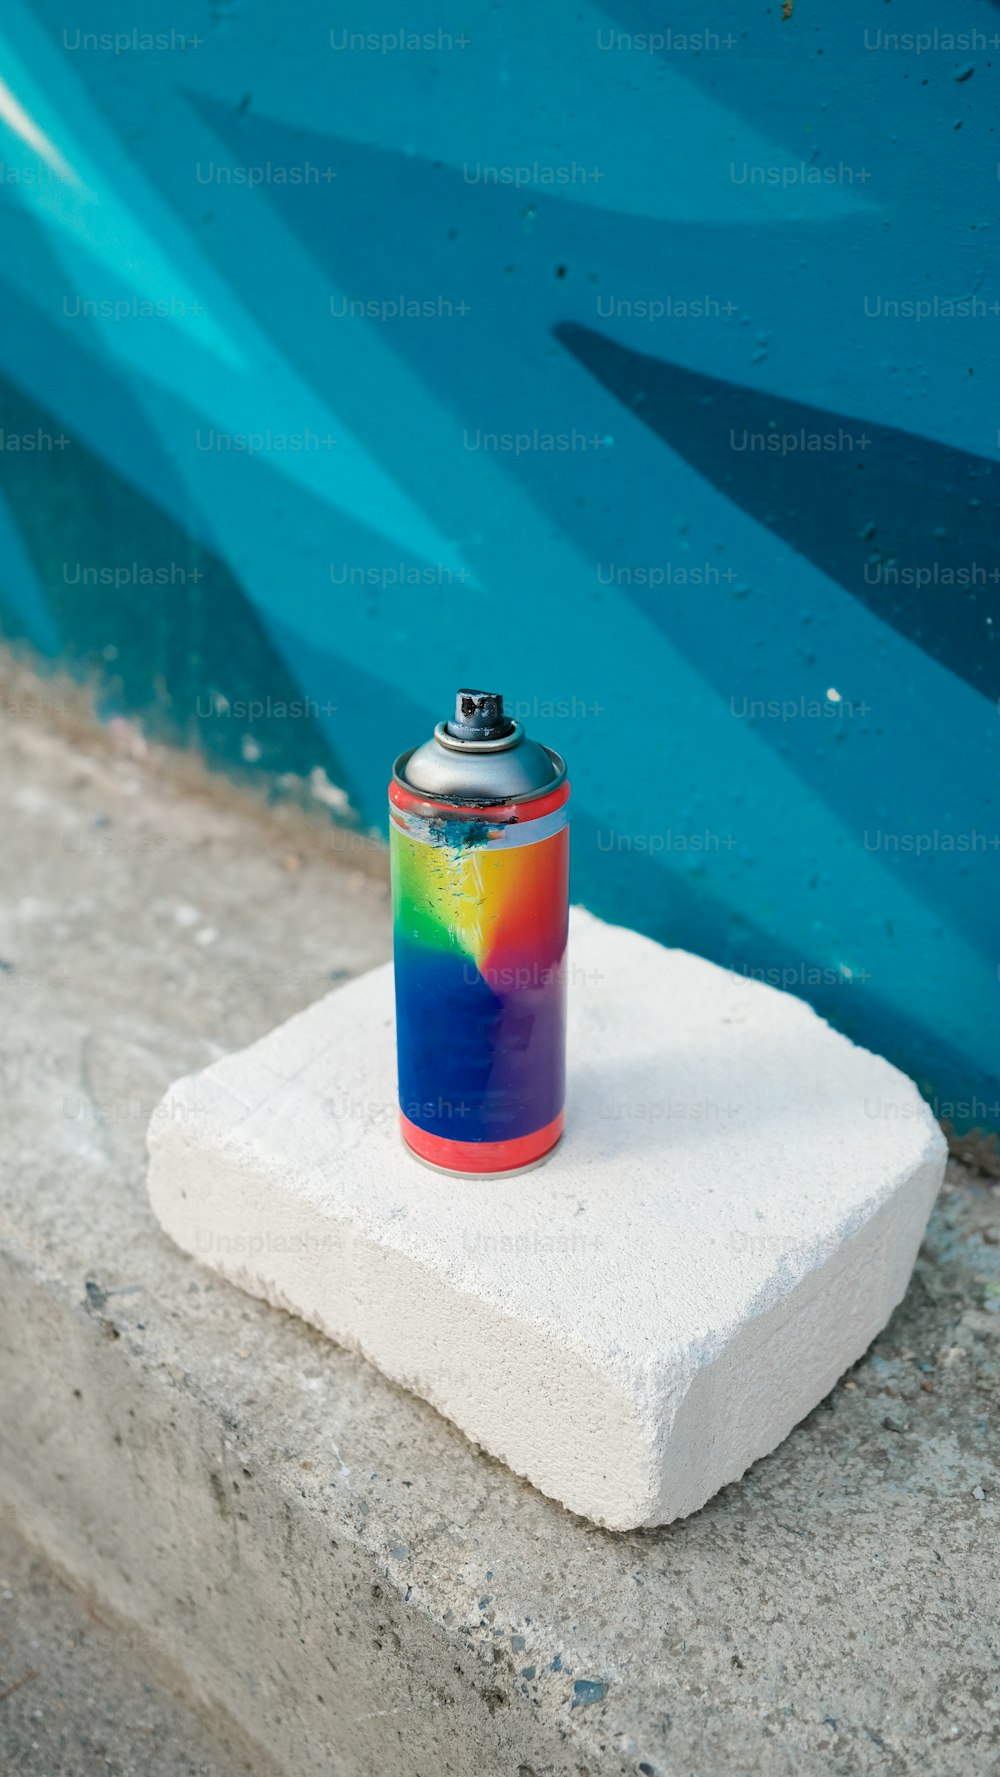 Una lata de refresco sentada encima de un bloque de concreto